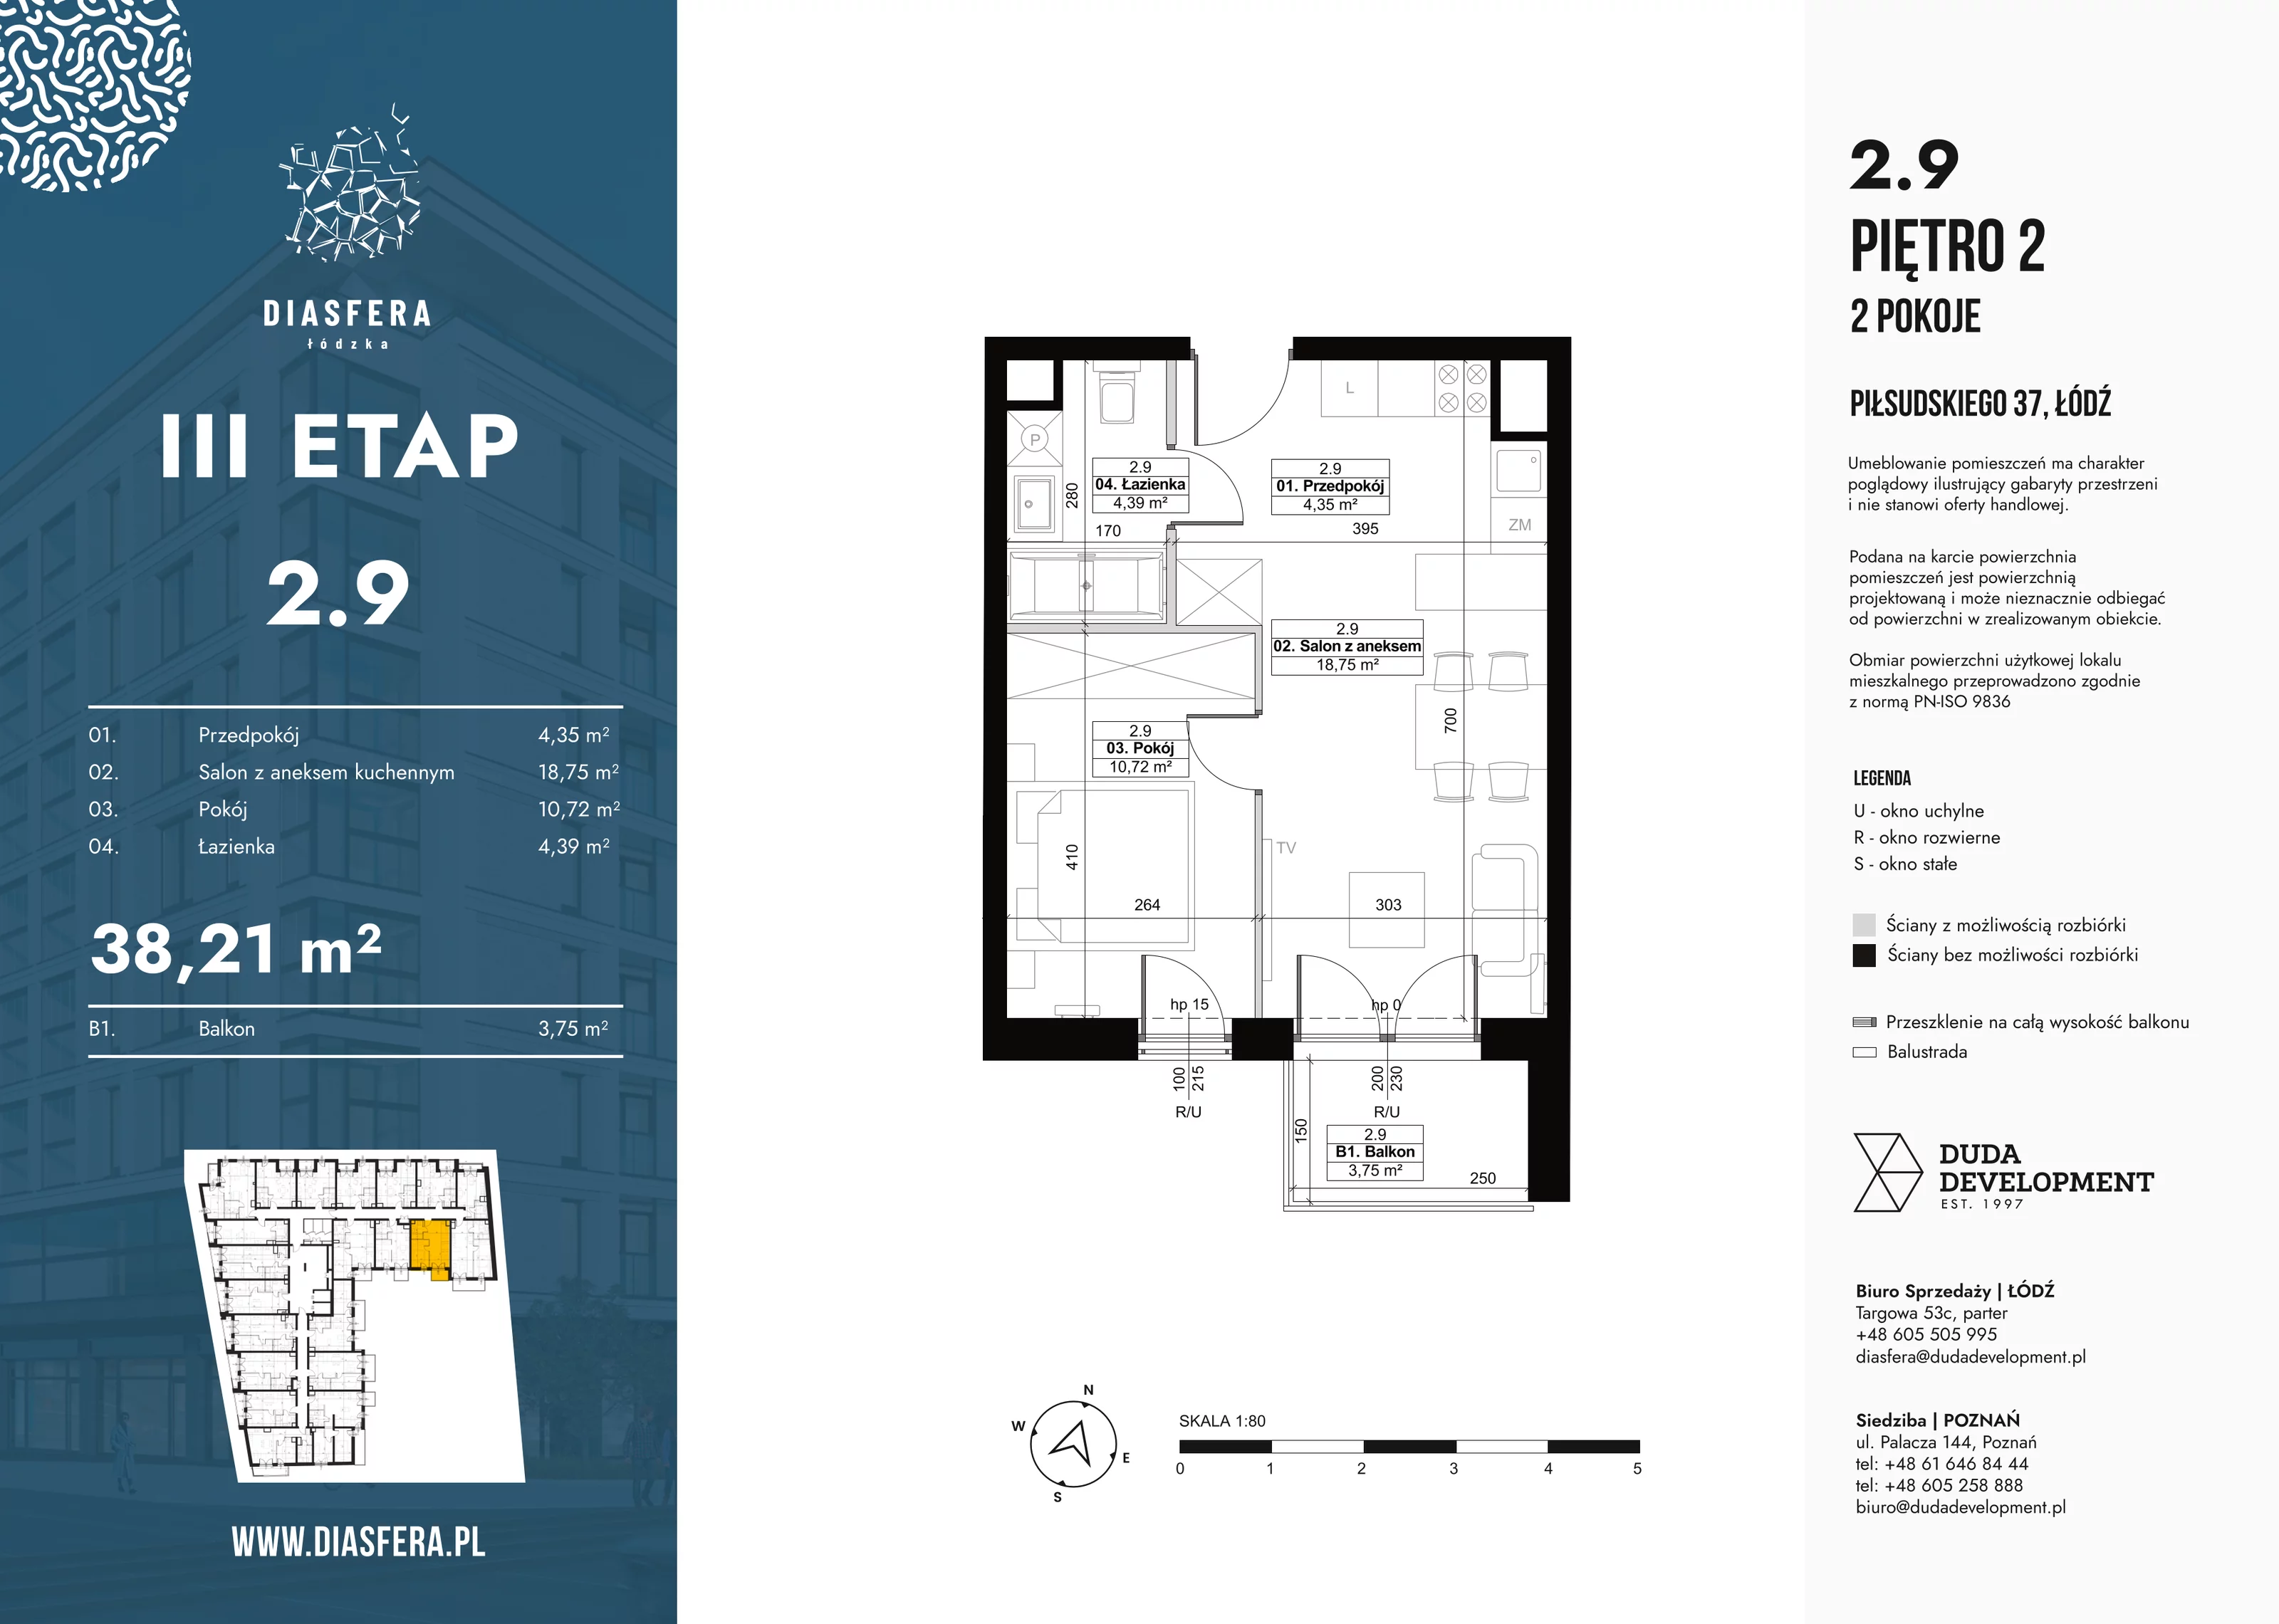 Mieszkanie 38,21 m², piętro 2, oferta nr 2_9, Diasfera III, Łódź, Śródmieście, al. Piłsudskiego 37